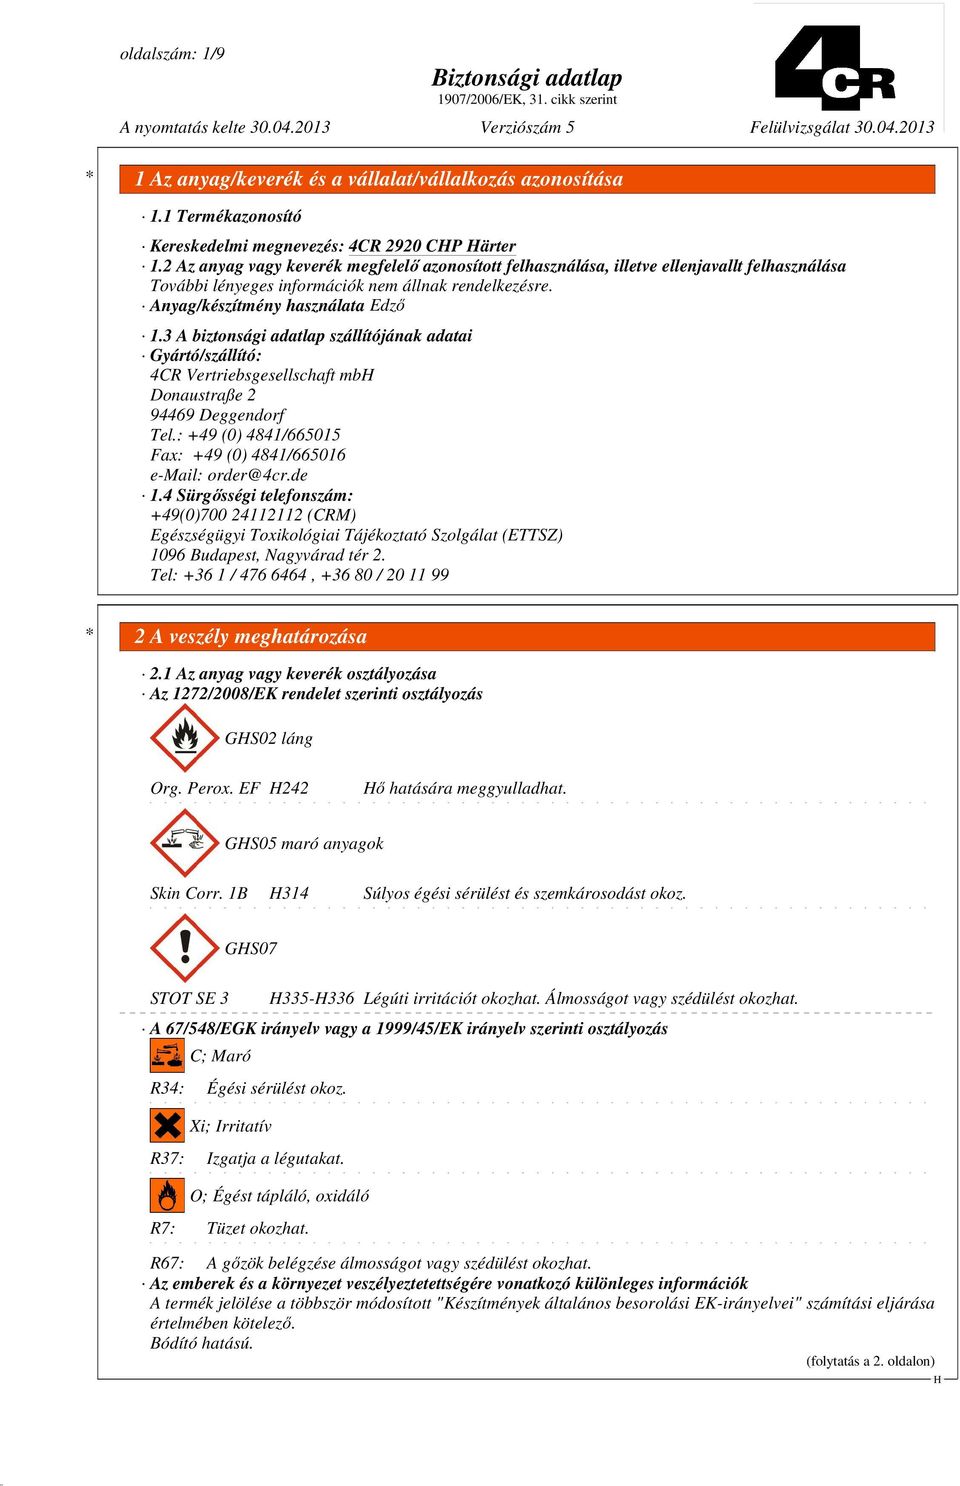 3 A biztonsági adatlap szállítójának adatai Gyártó/szállító: 4CR Vertriebsgesellschaft mb Donaustraße 2 94469 Deggendorf Tel.: +49 (0) 4841/665015 Fax: +49 (0) 4841/665016 e-mail: order@4cr.de 1.